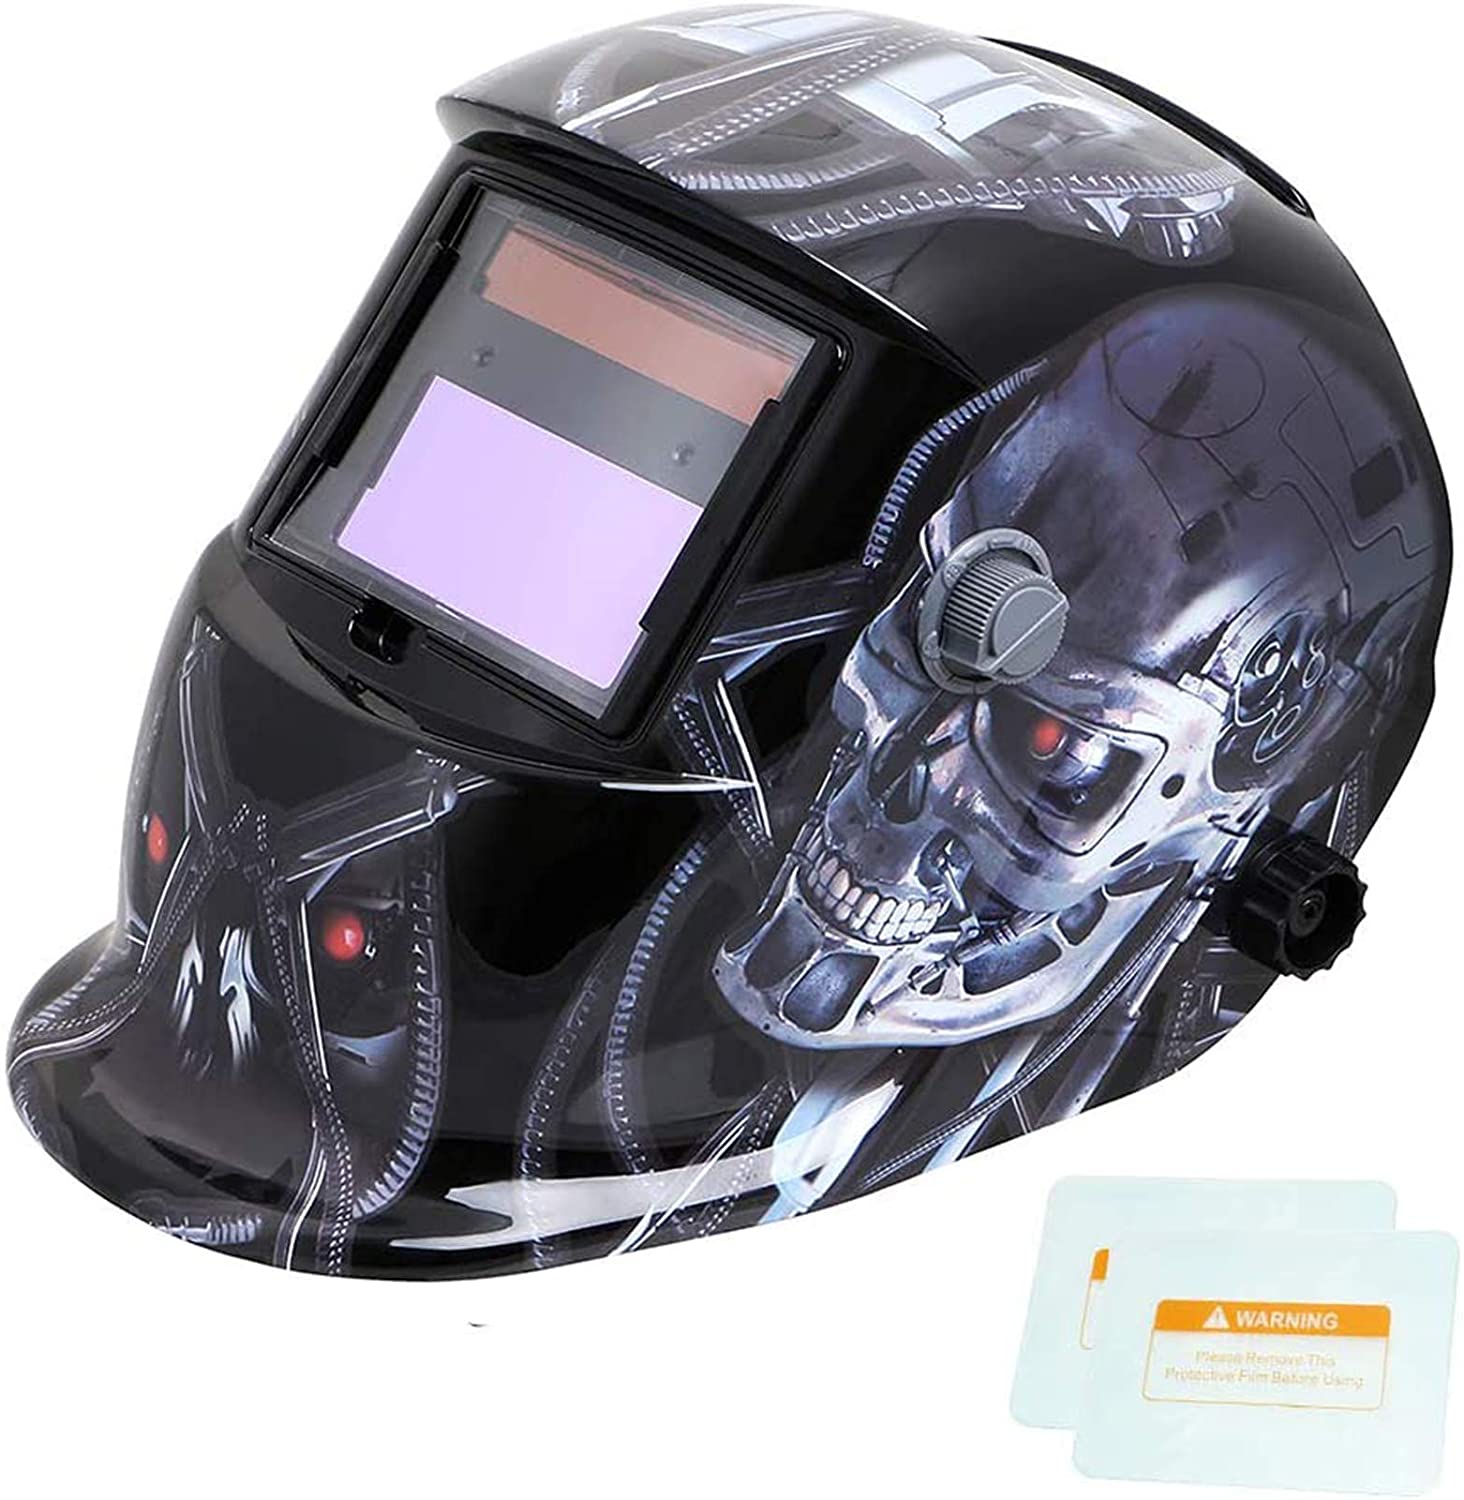 Tekware Welding Helmet with Adjustable Shade Range